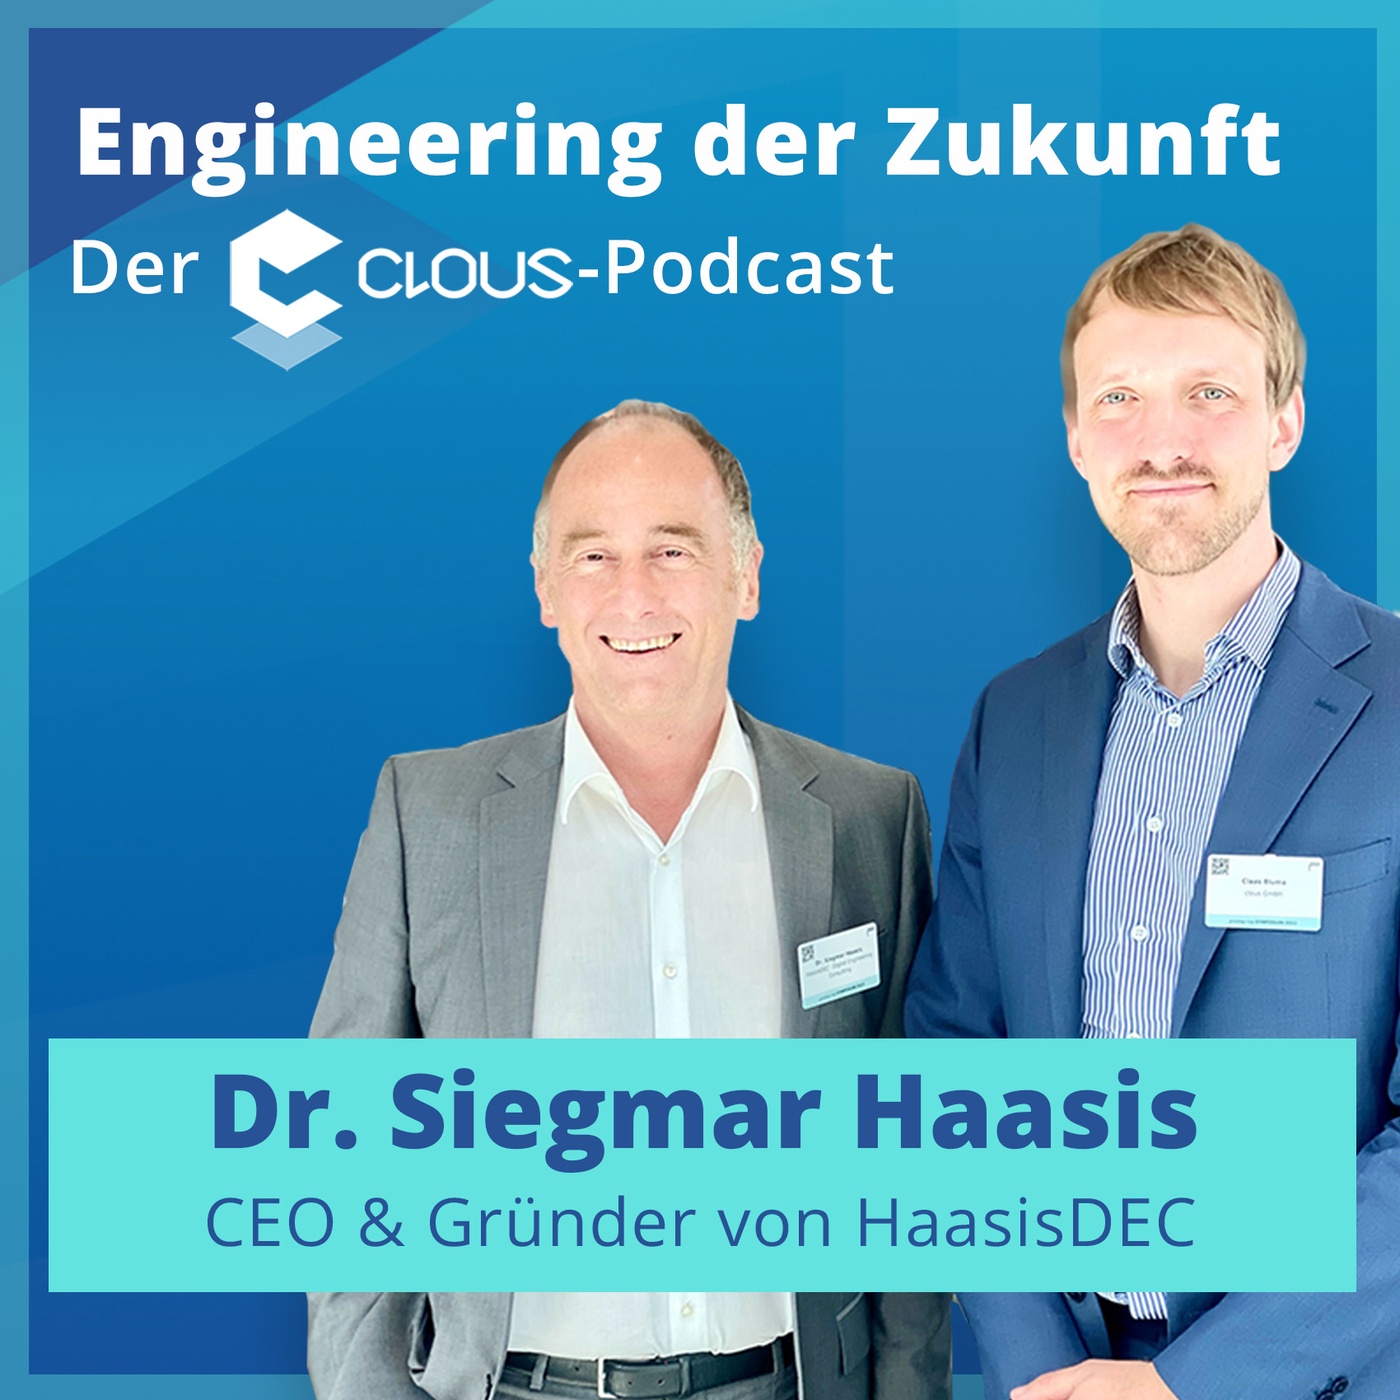 Digital Engineering: Wandel und Fortschritt der vergangenen Jahre | Dr. Siegmar Haasis